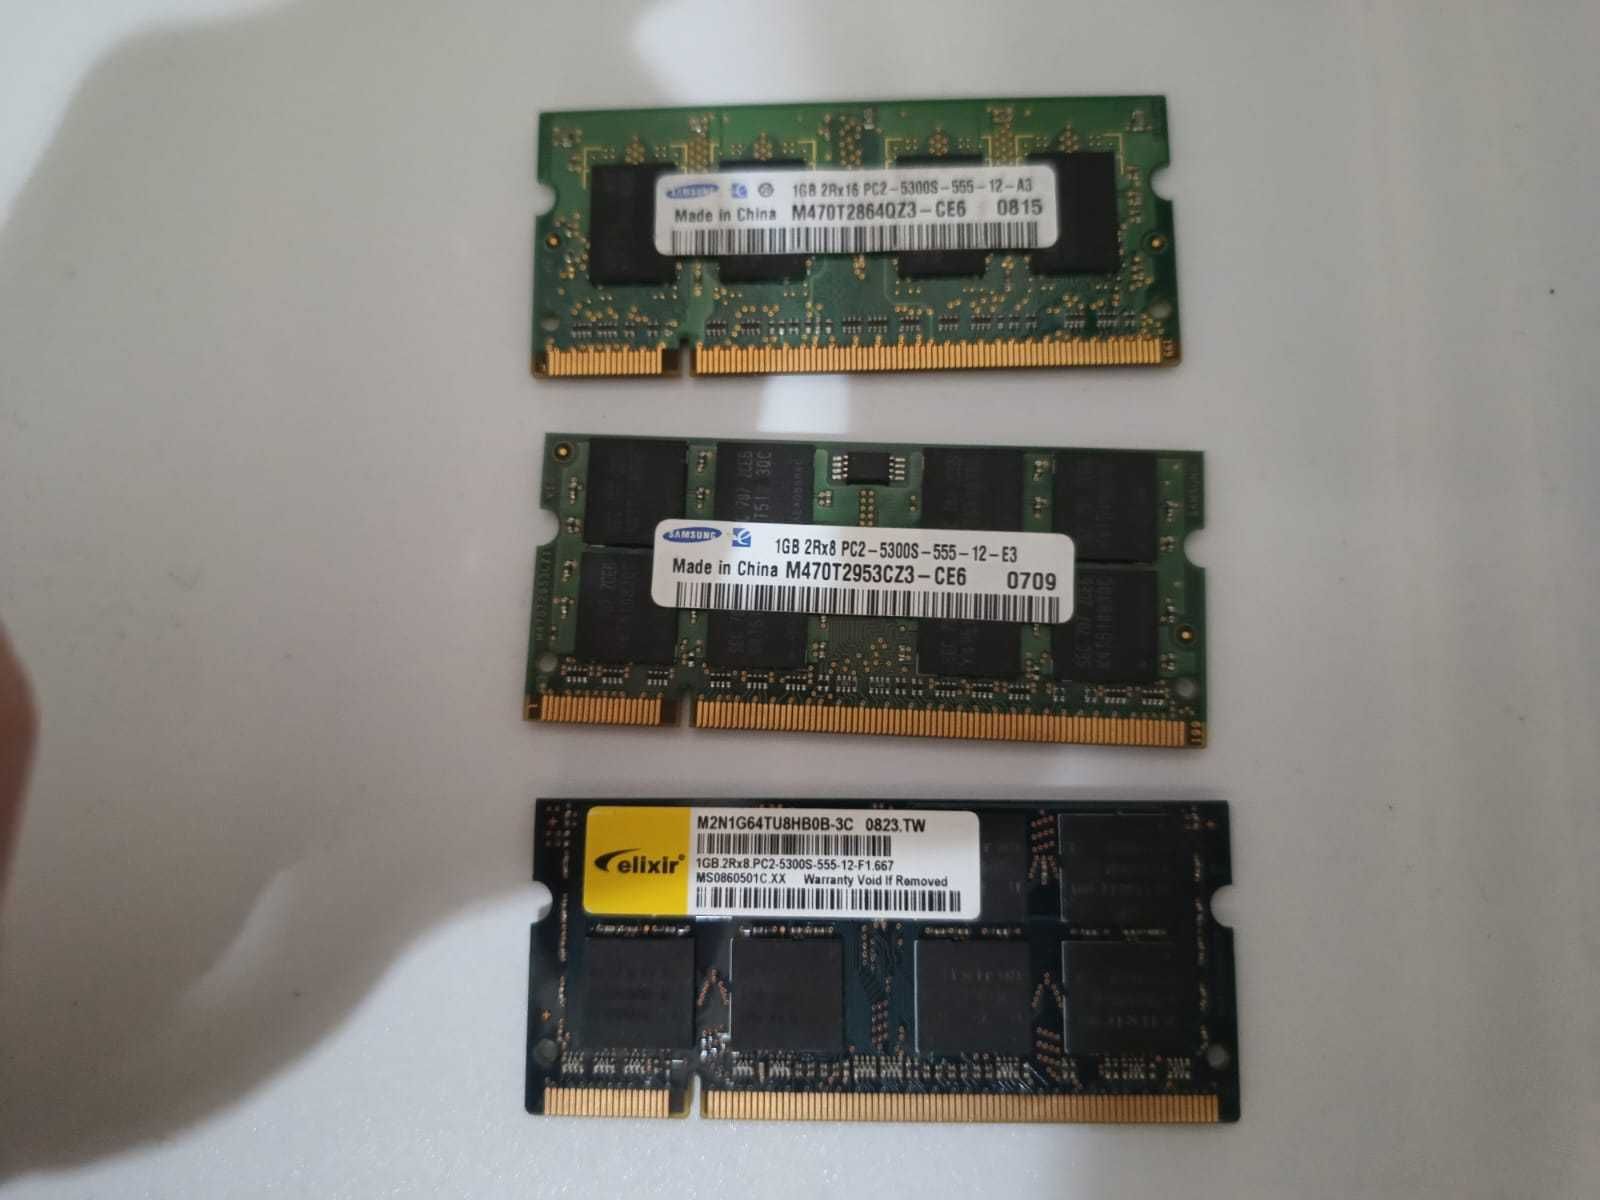 Zestaw 3 kości pamięci 1GB 2RX16 PC2 5300S-555-12. (1)